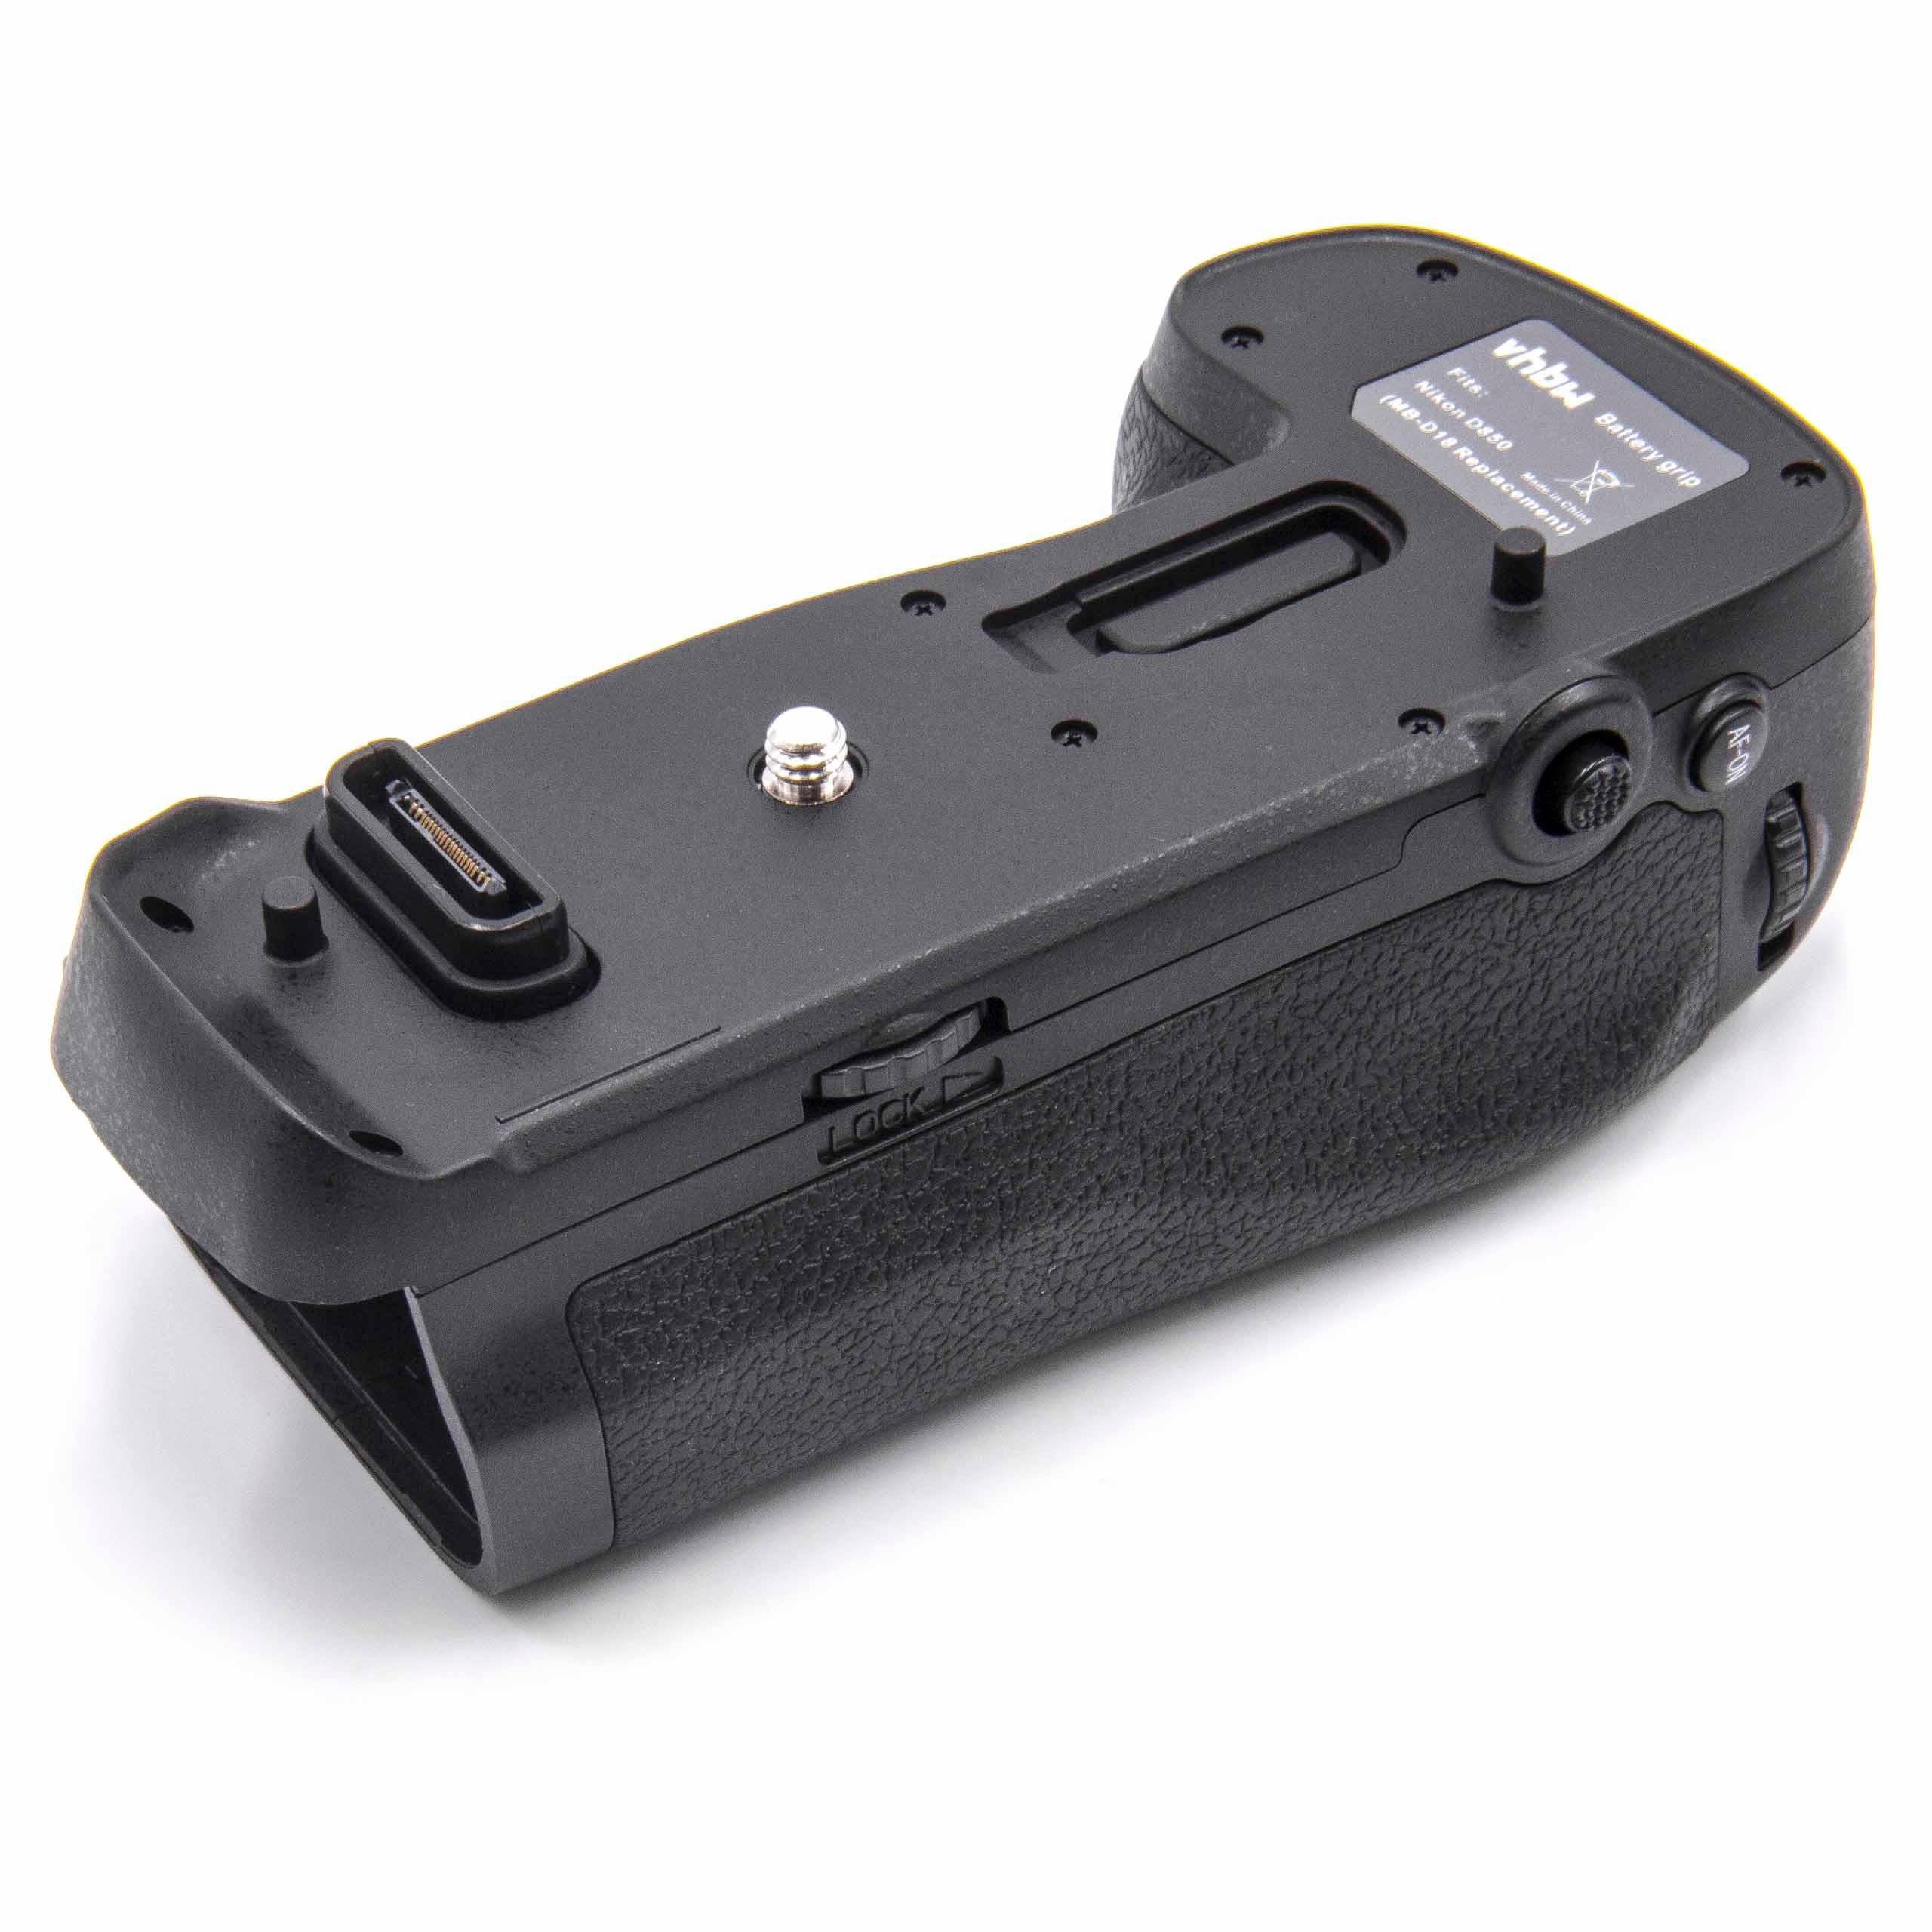 Batteriegriff als Ersatz für Nikon MB-D18 für Nikon Kamera - Inkl. Wählrad 